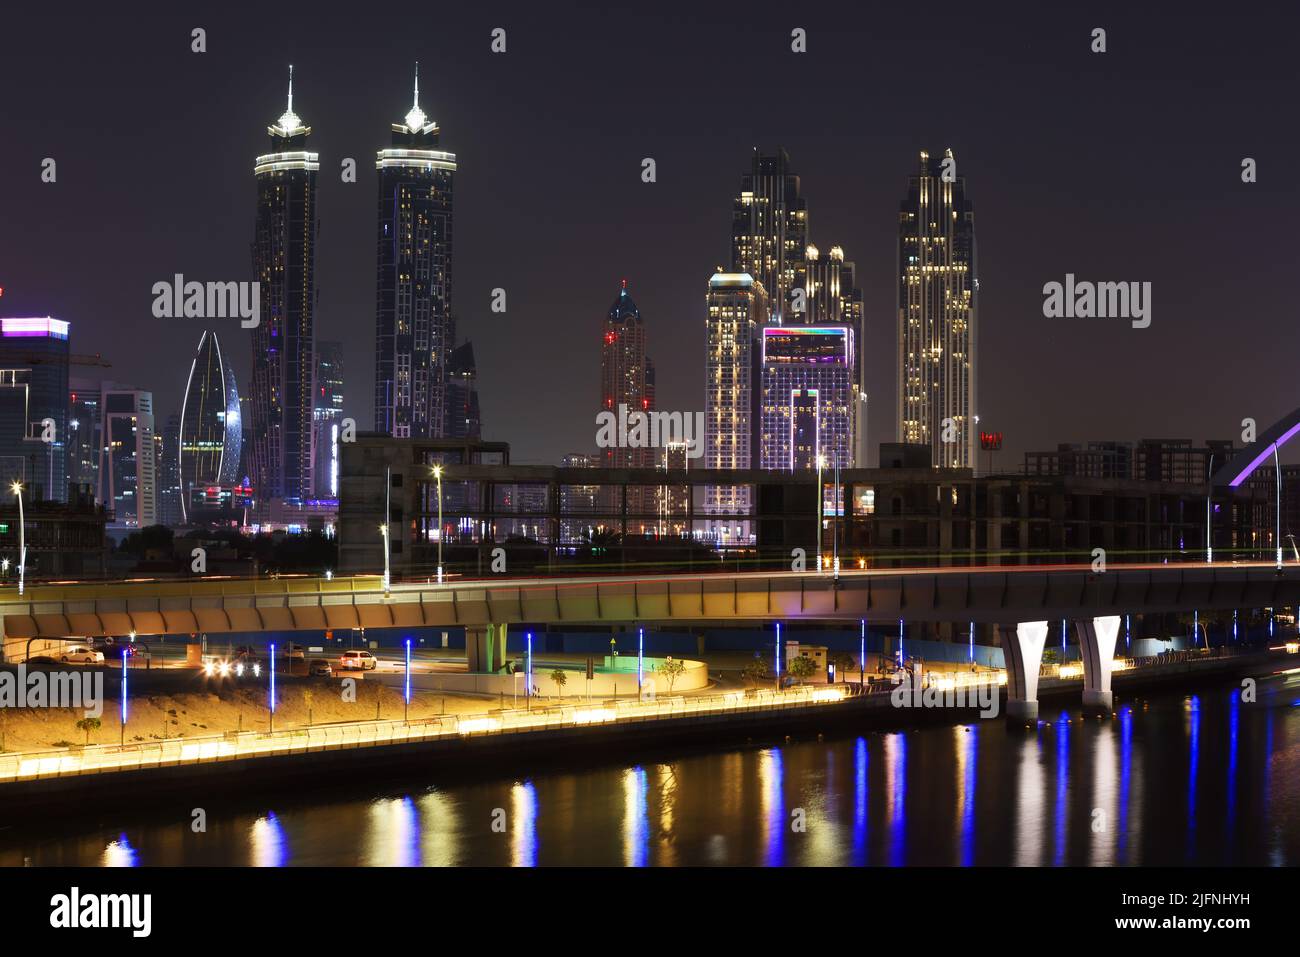 Dubai Canal, Dubai, Wolkenkratzer, , moderne Architektur,  Atemberaubende Aussicht auf die Skyline mit Hochhäuser, Skyscraper, Hotels im Finanzzentrum Stock Photo